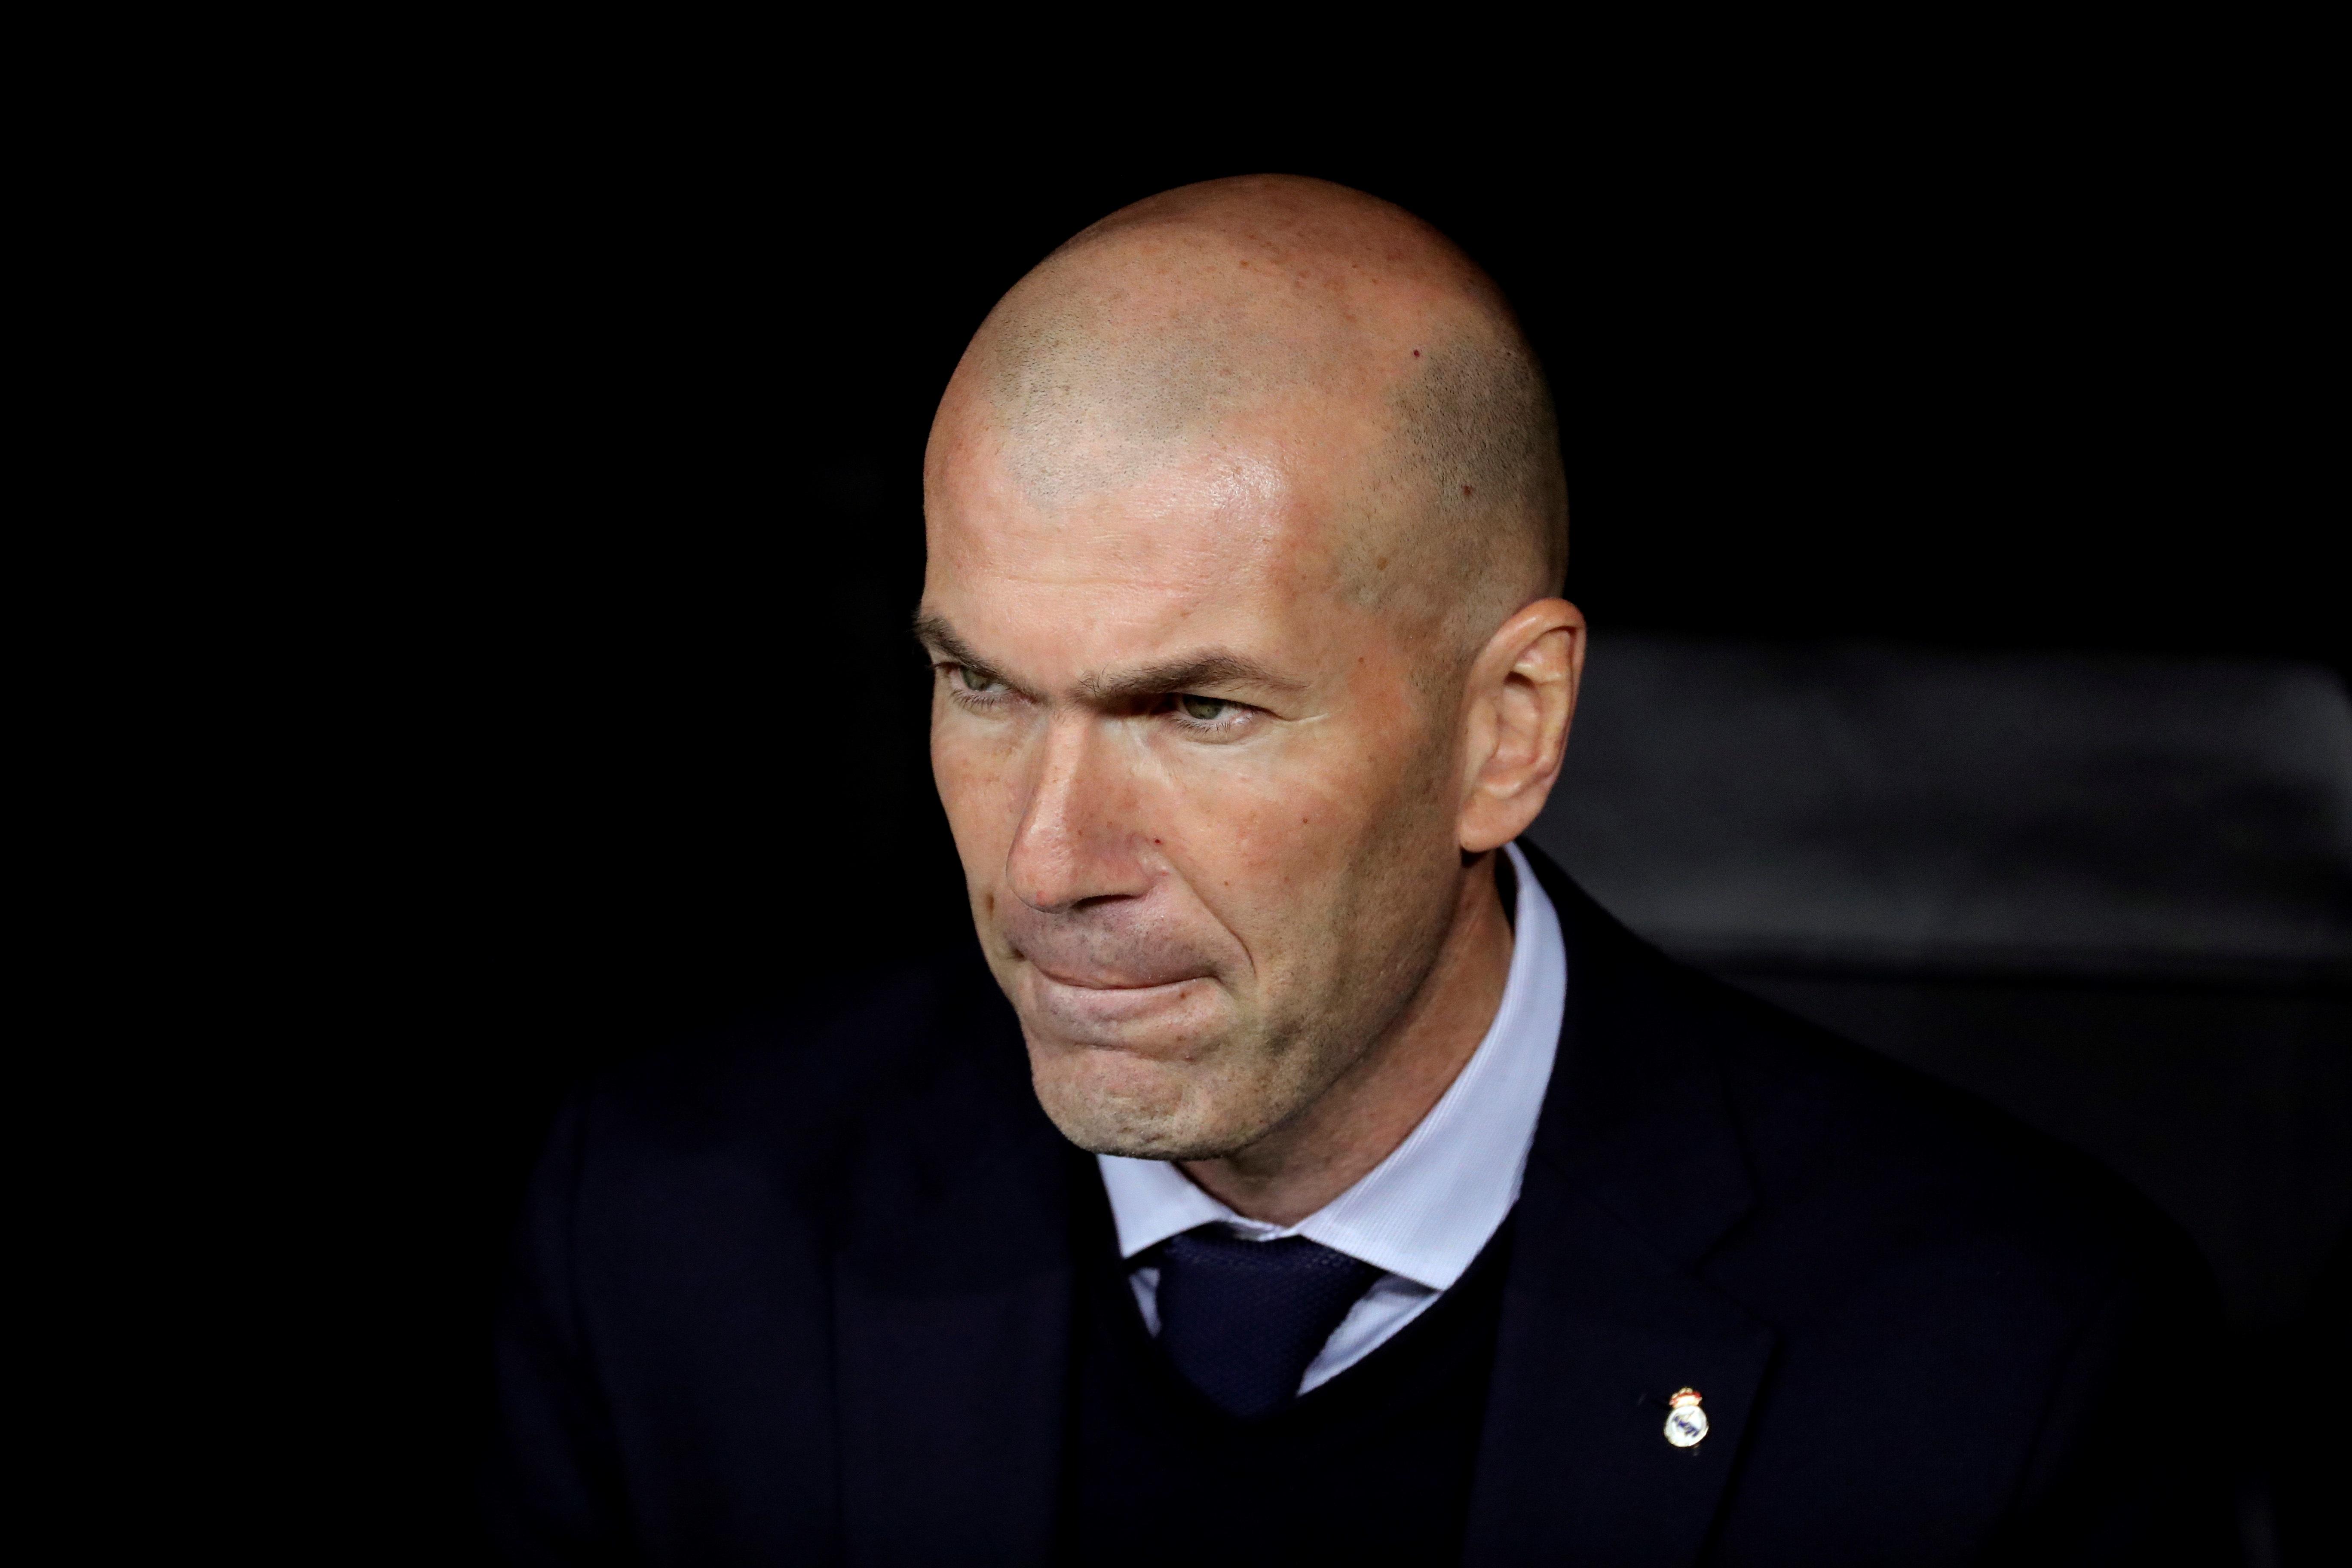 El entrenador del Real Madrid, Zinedine Zidane, no le agradó nada la derrota de su club. (Foto Prensa Libre: EFE)